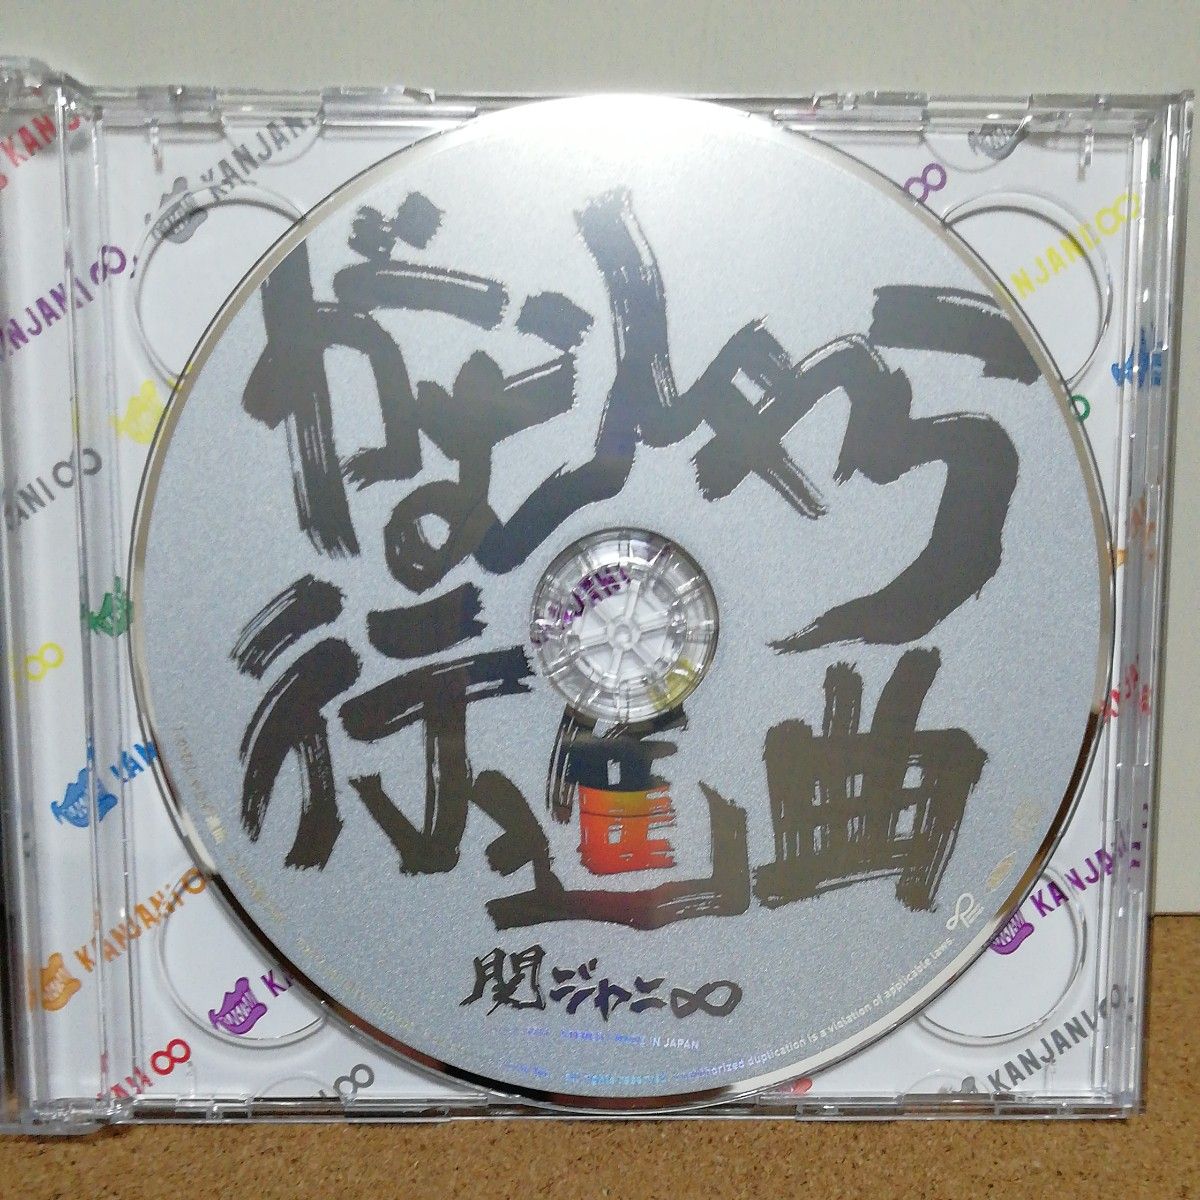 がむしゃら行進曲 (初回限定盤) (DVD付)